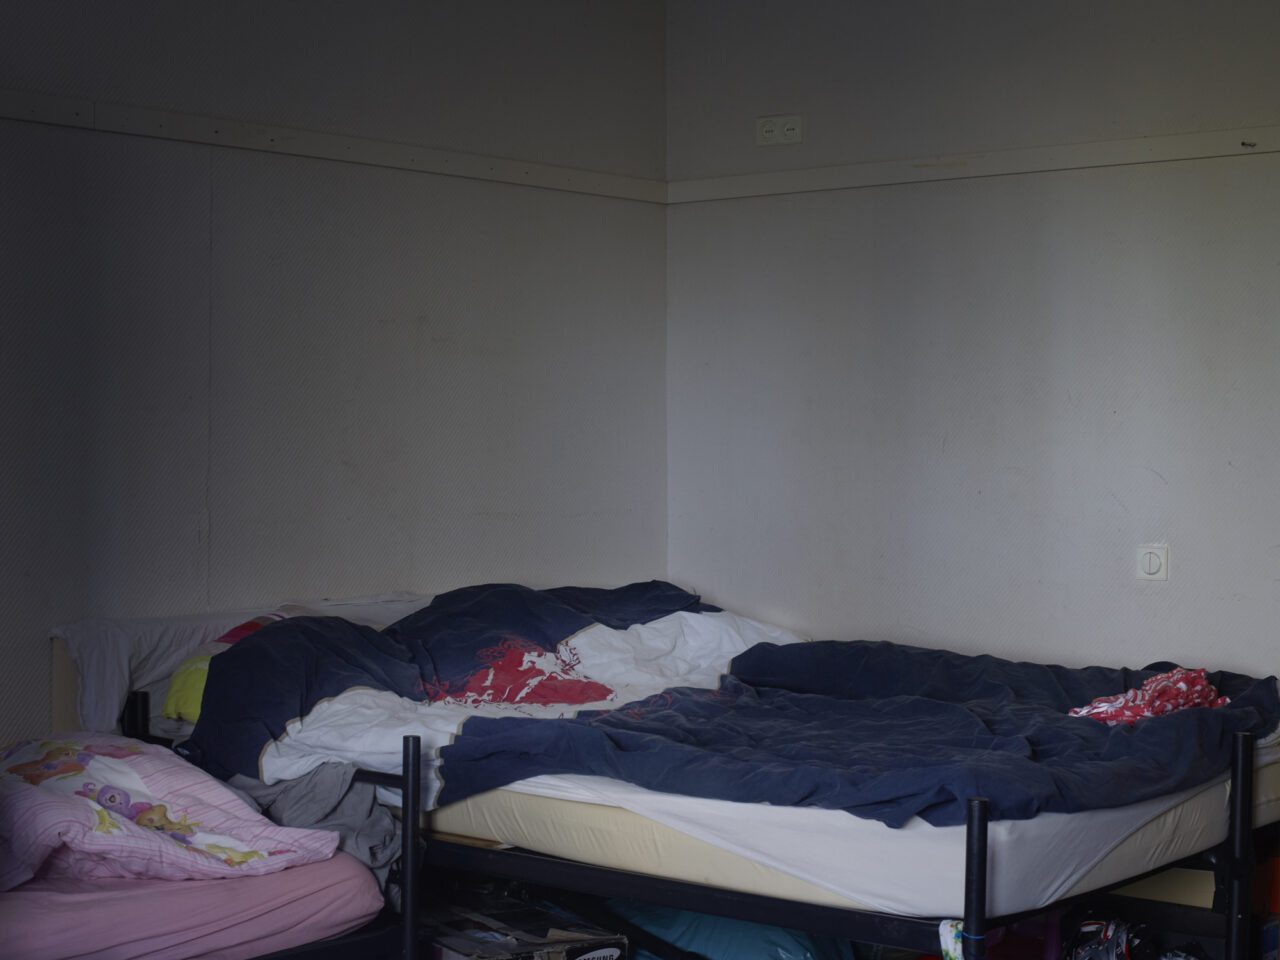 Denny's en Angela’s kamer, Gezinslocatie  voor uitgeprocedeerde asielzoekers met beperkte bewegingsvrijheid, Katwijk 